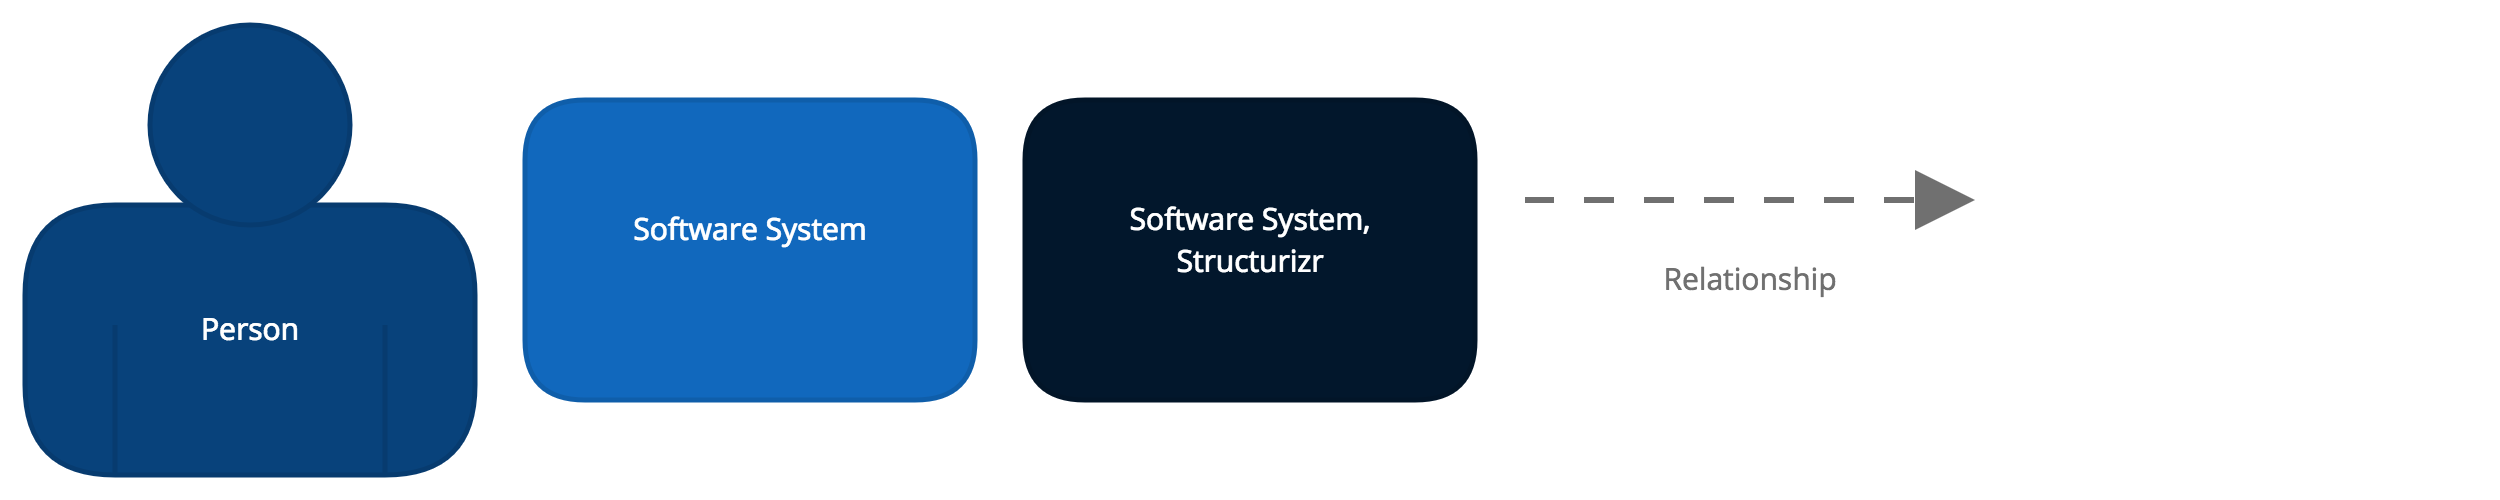 structurizr - context - diagram key